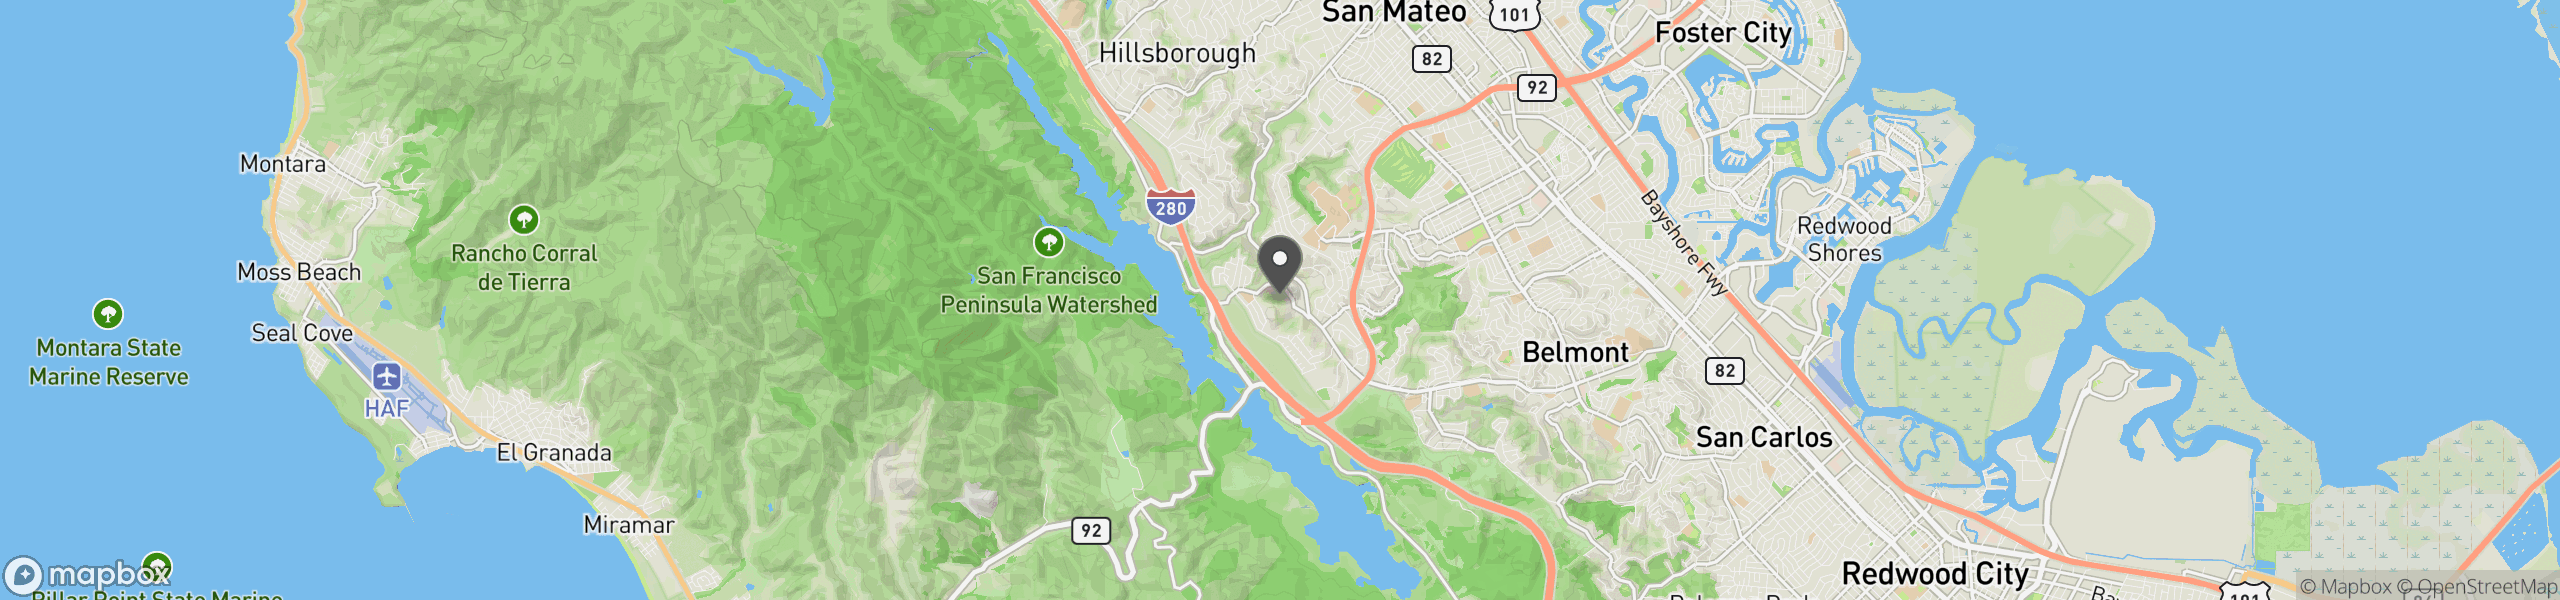 San Mateo, CA 94402